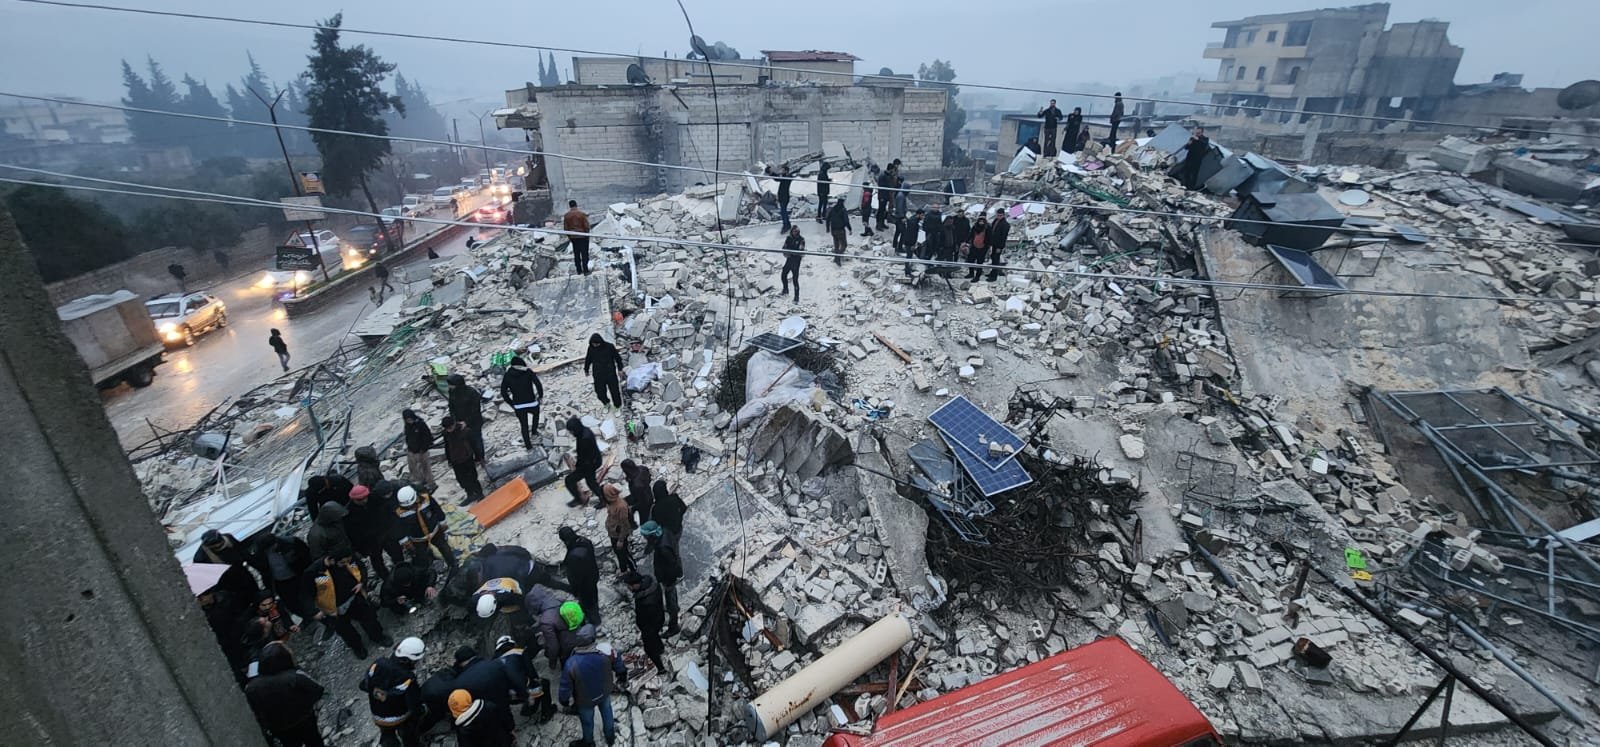 أردوغان يتوجه إلى مقر إدارة الكوارث .. وعدد قتلى الزلزال يقترب إلى 300-0